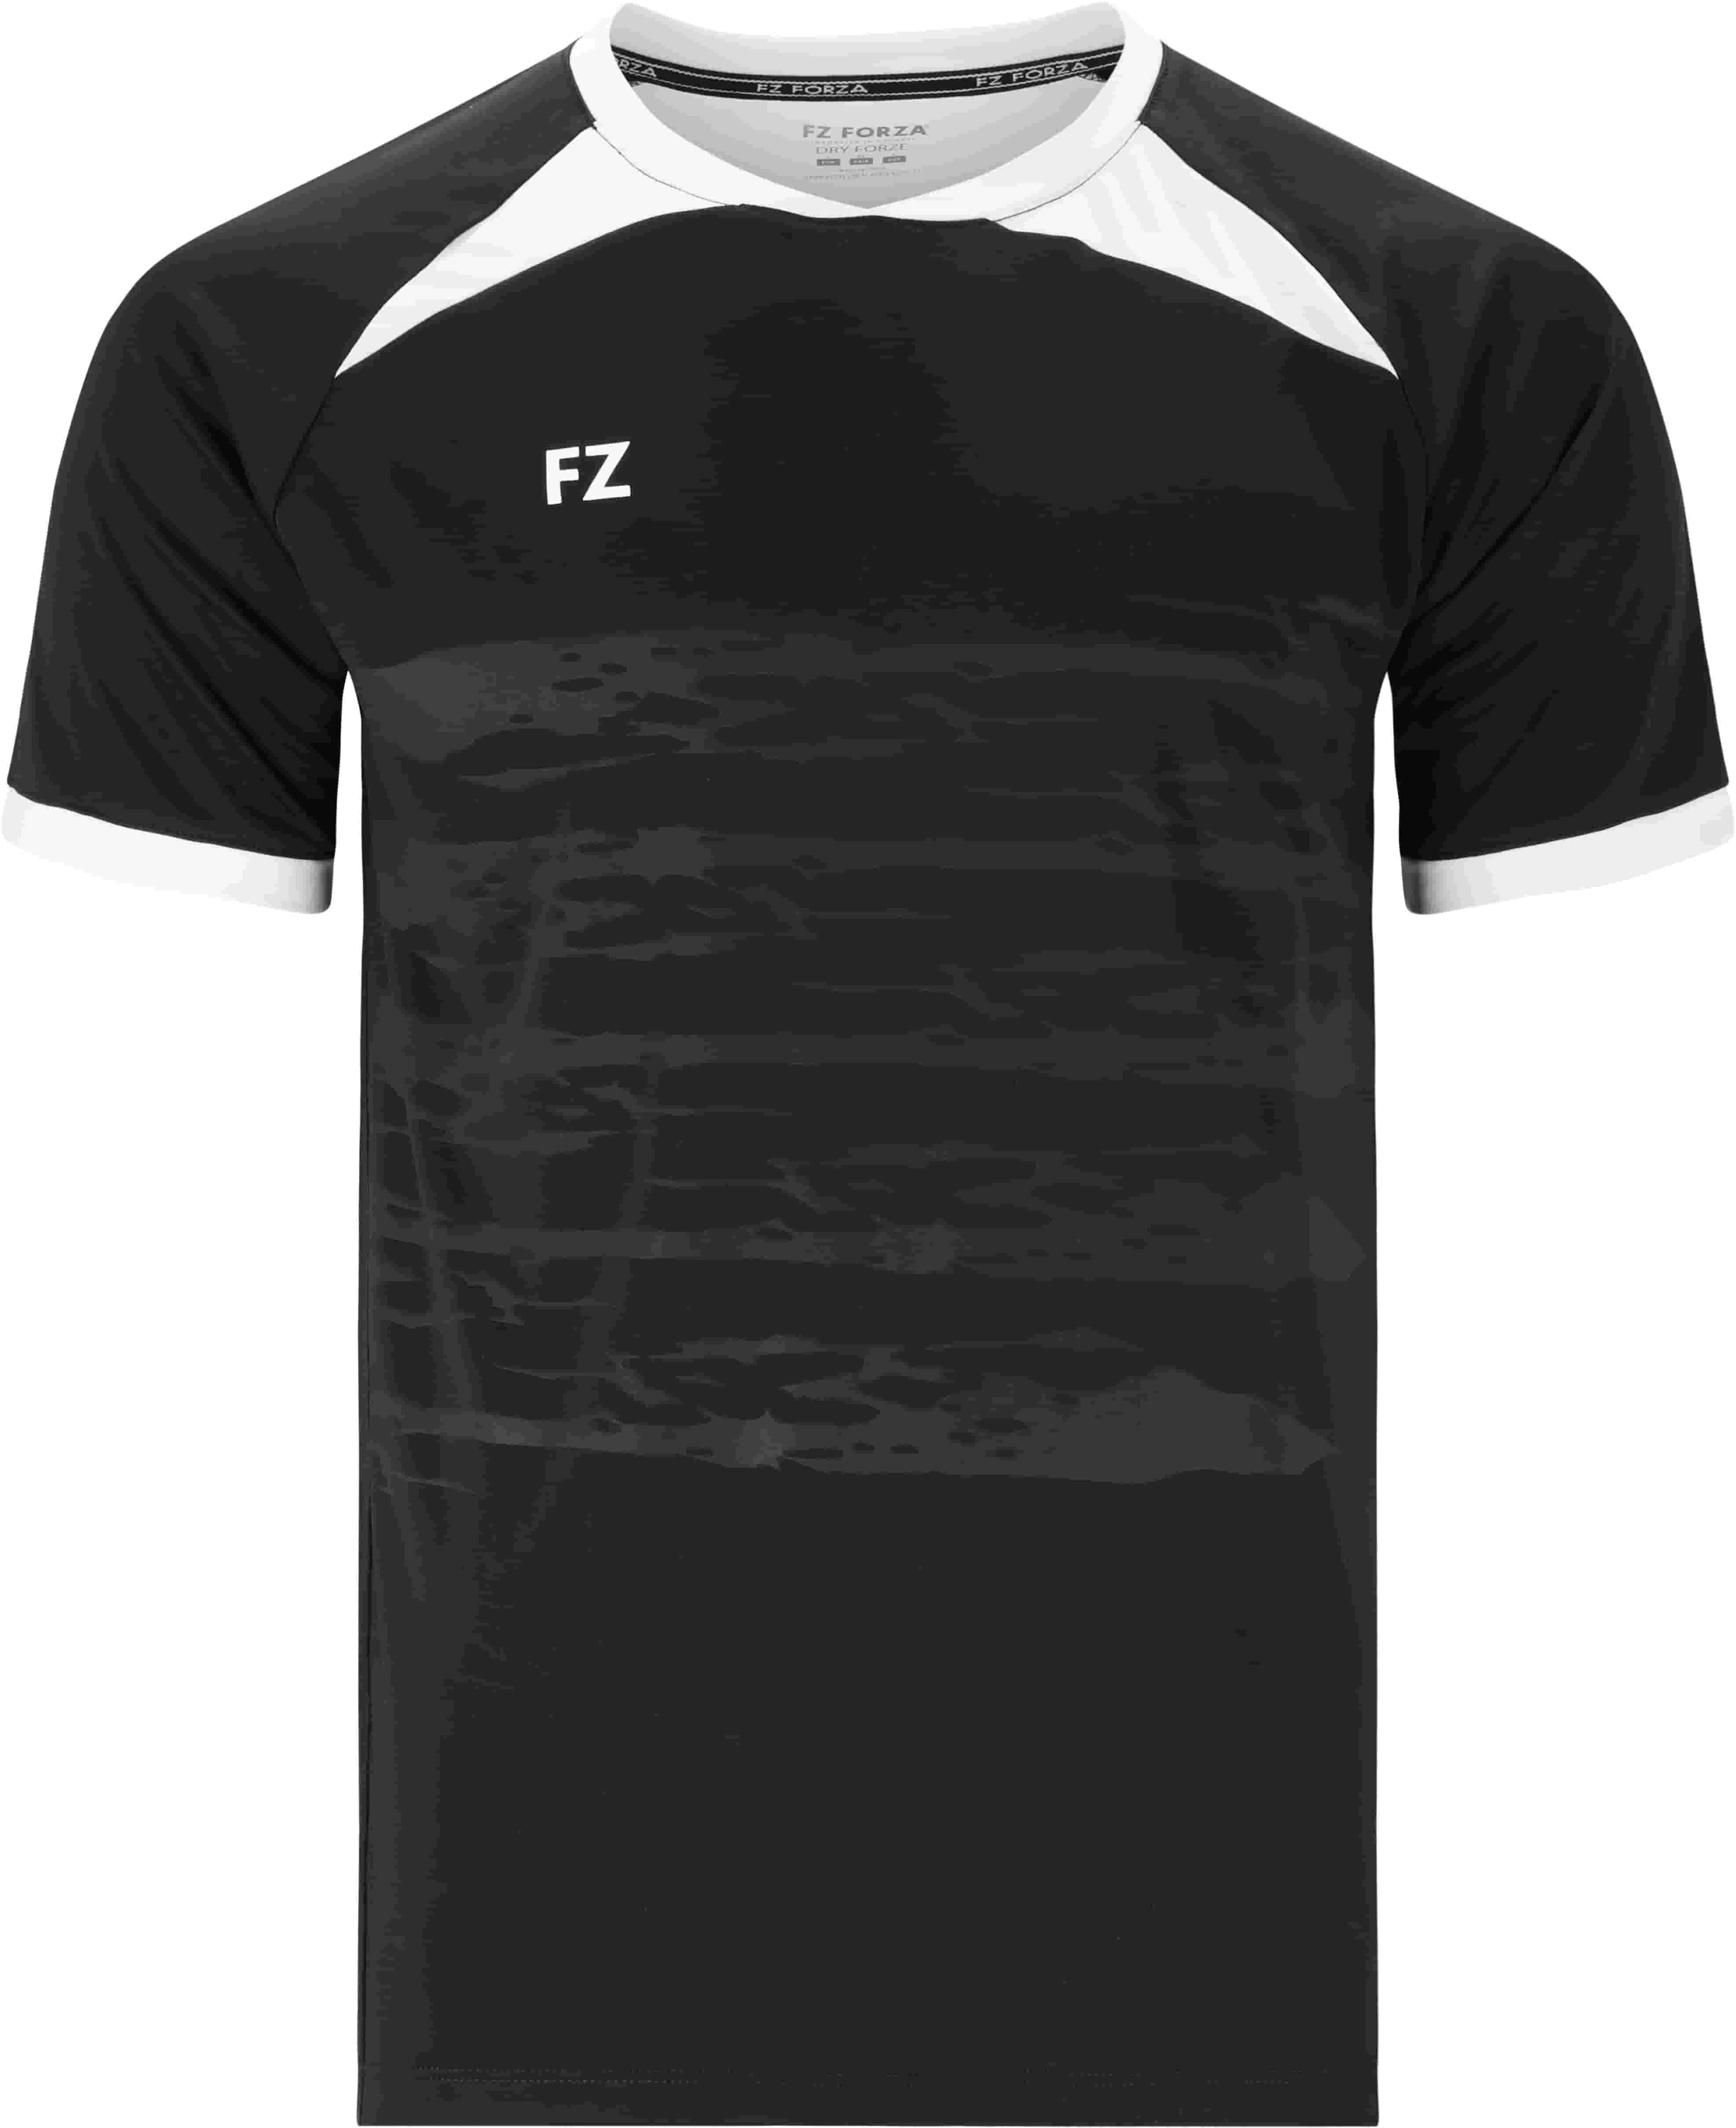 FZ FORZA Agentin M T-Shirt - Schwarz 14